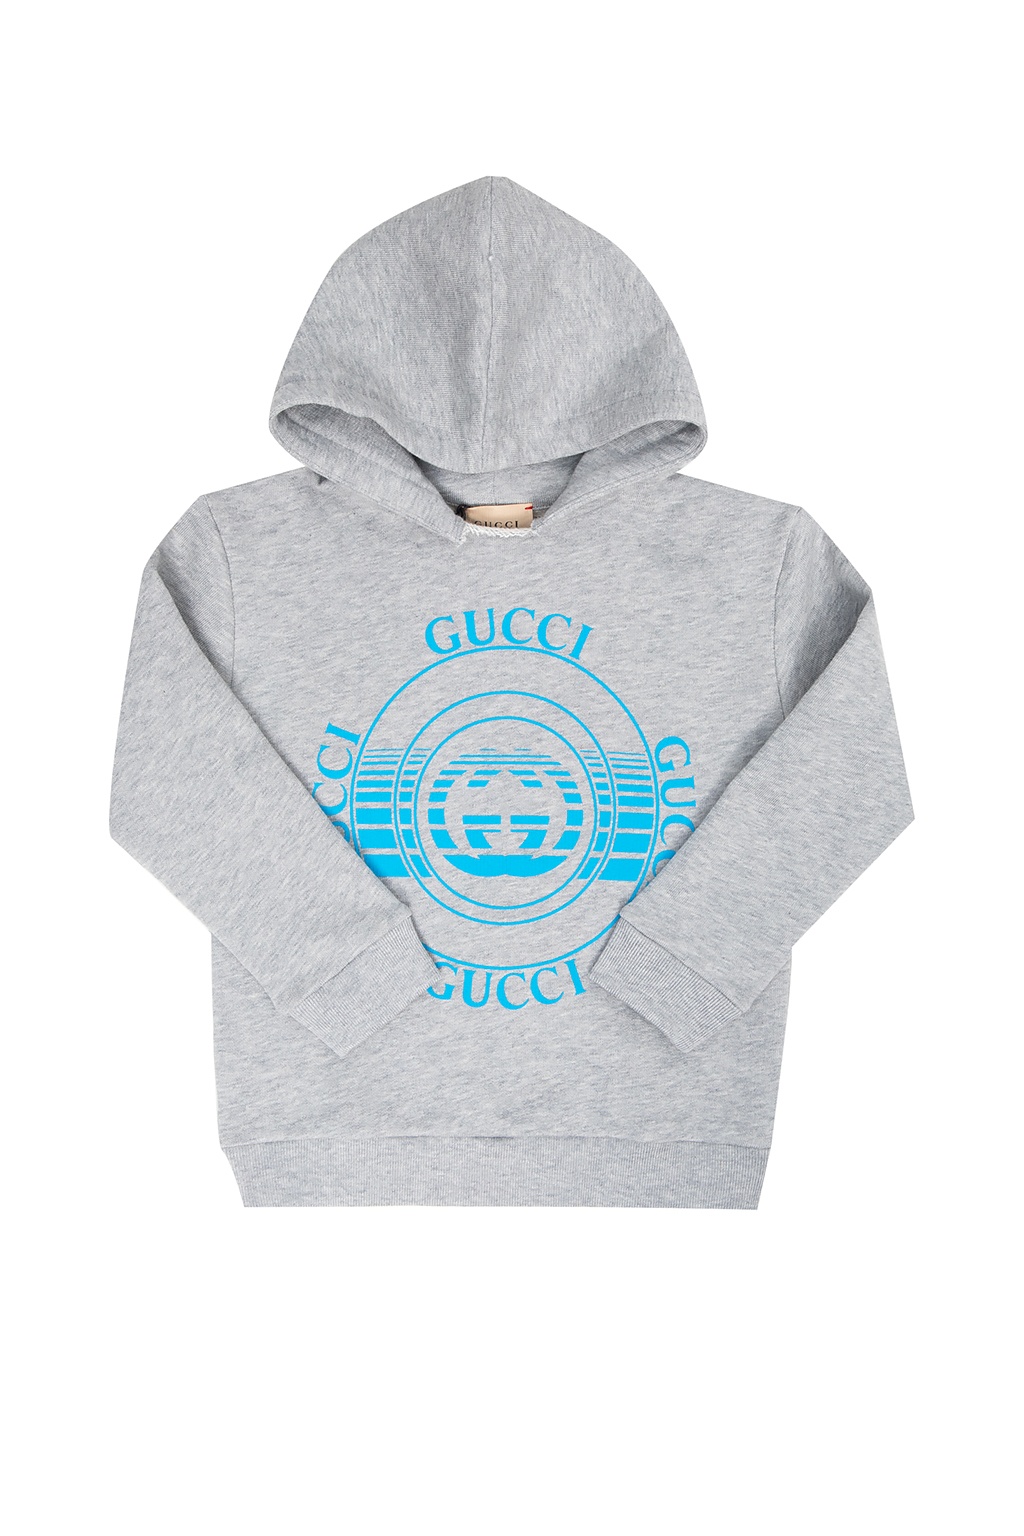 Gucci Kids Branded hoodie